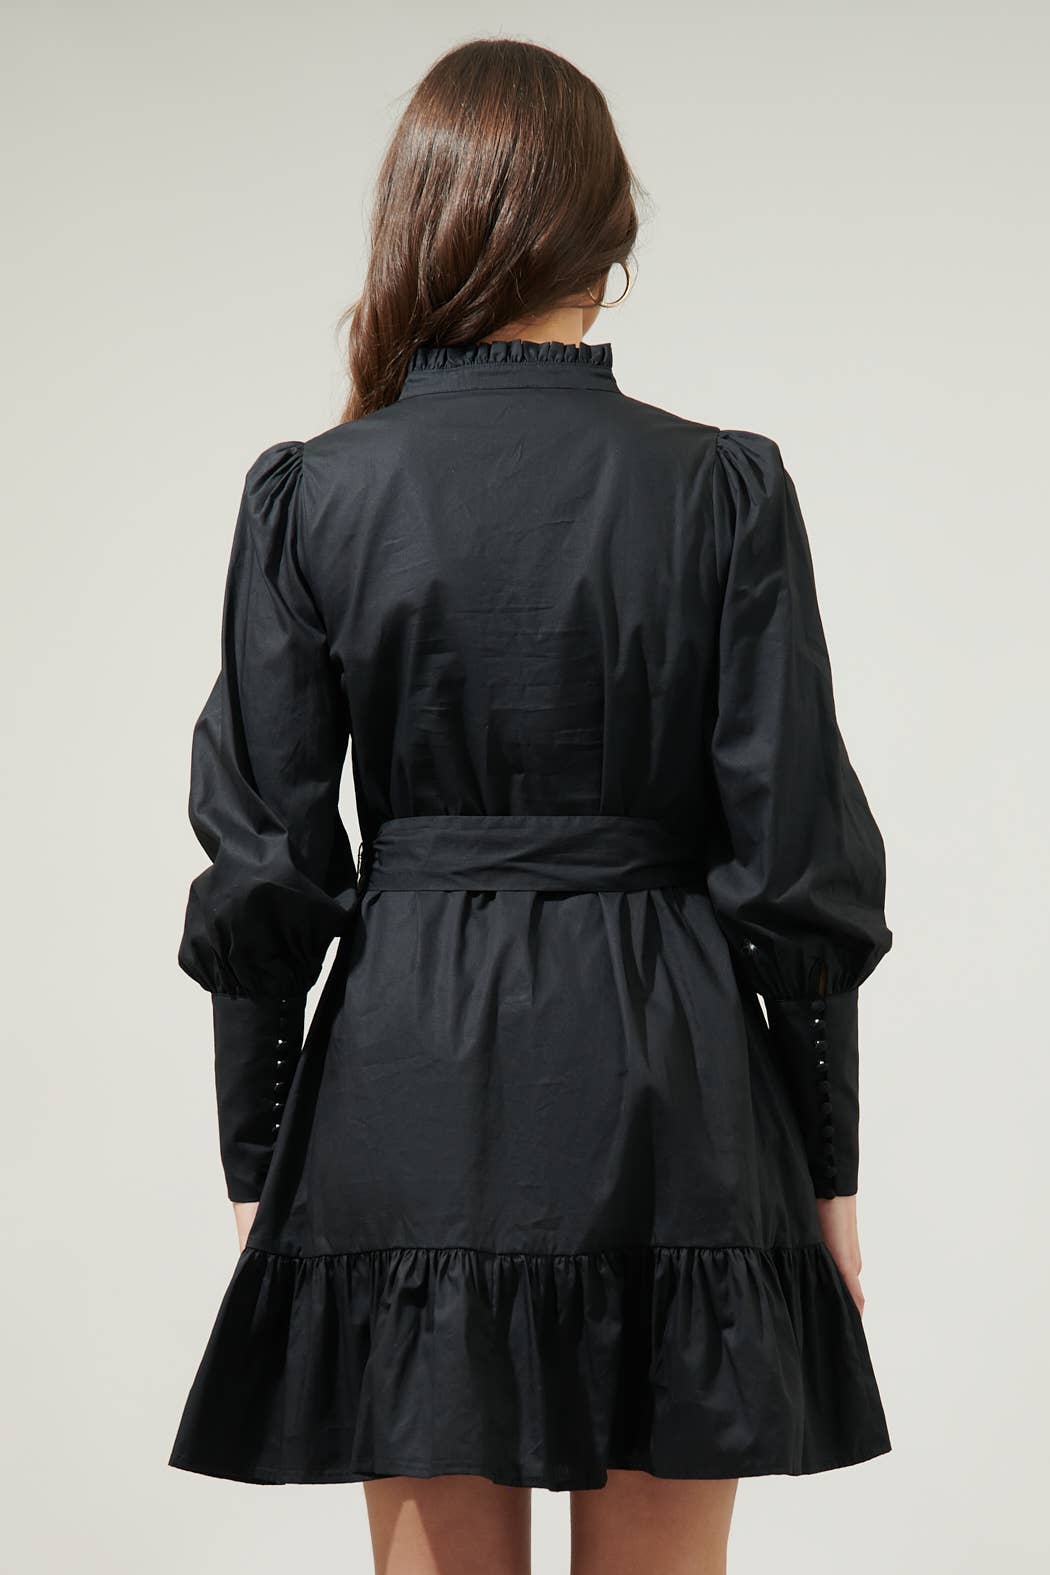 Beacher Pintuck Shift Dress: Black / L